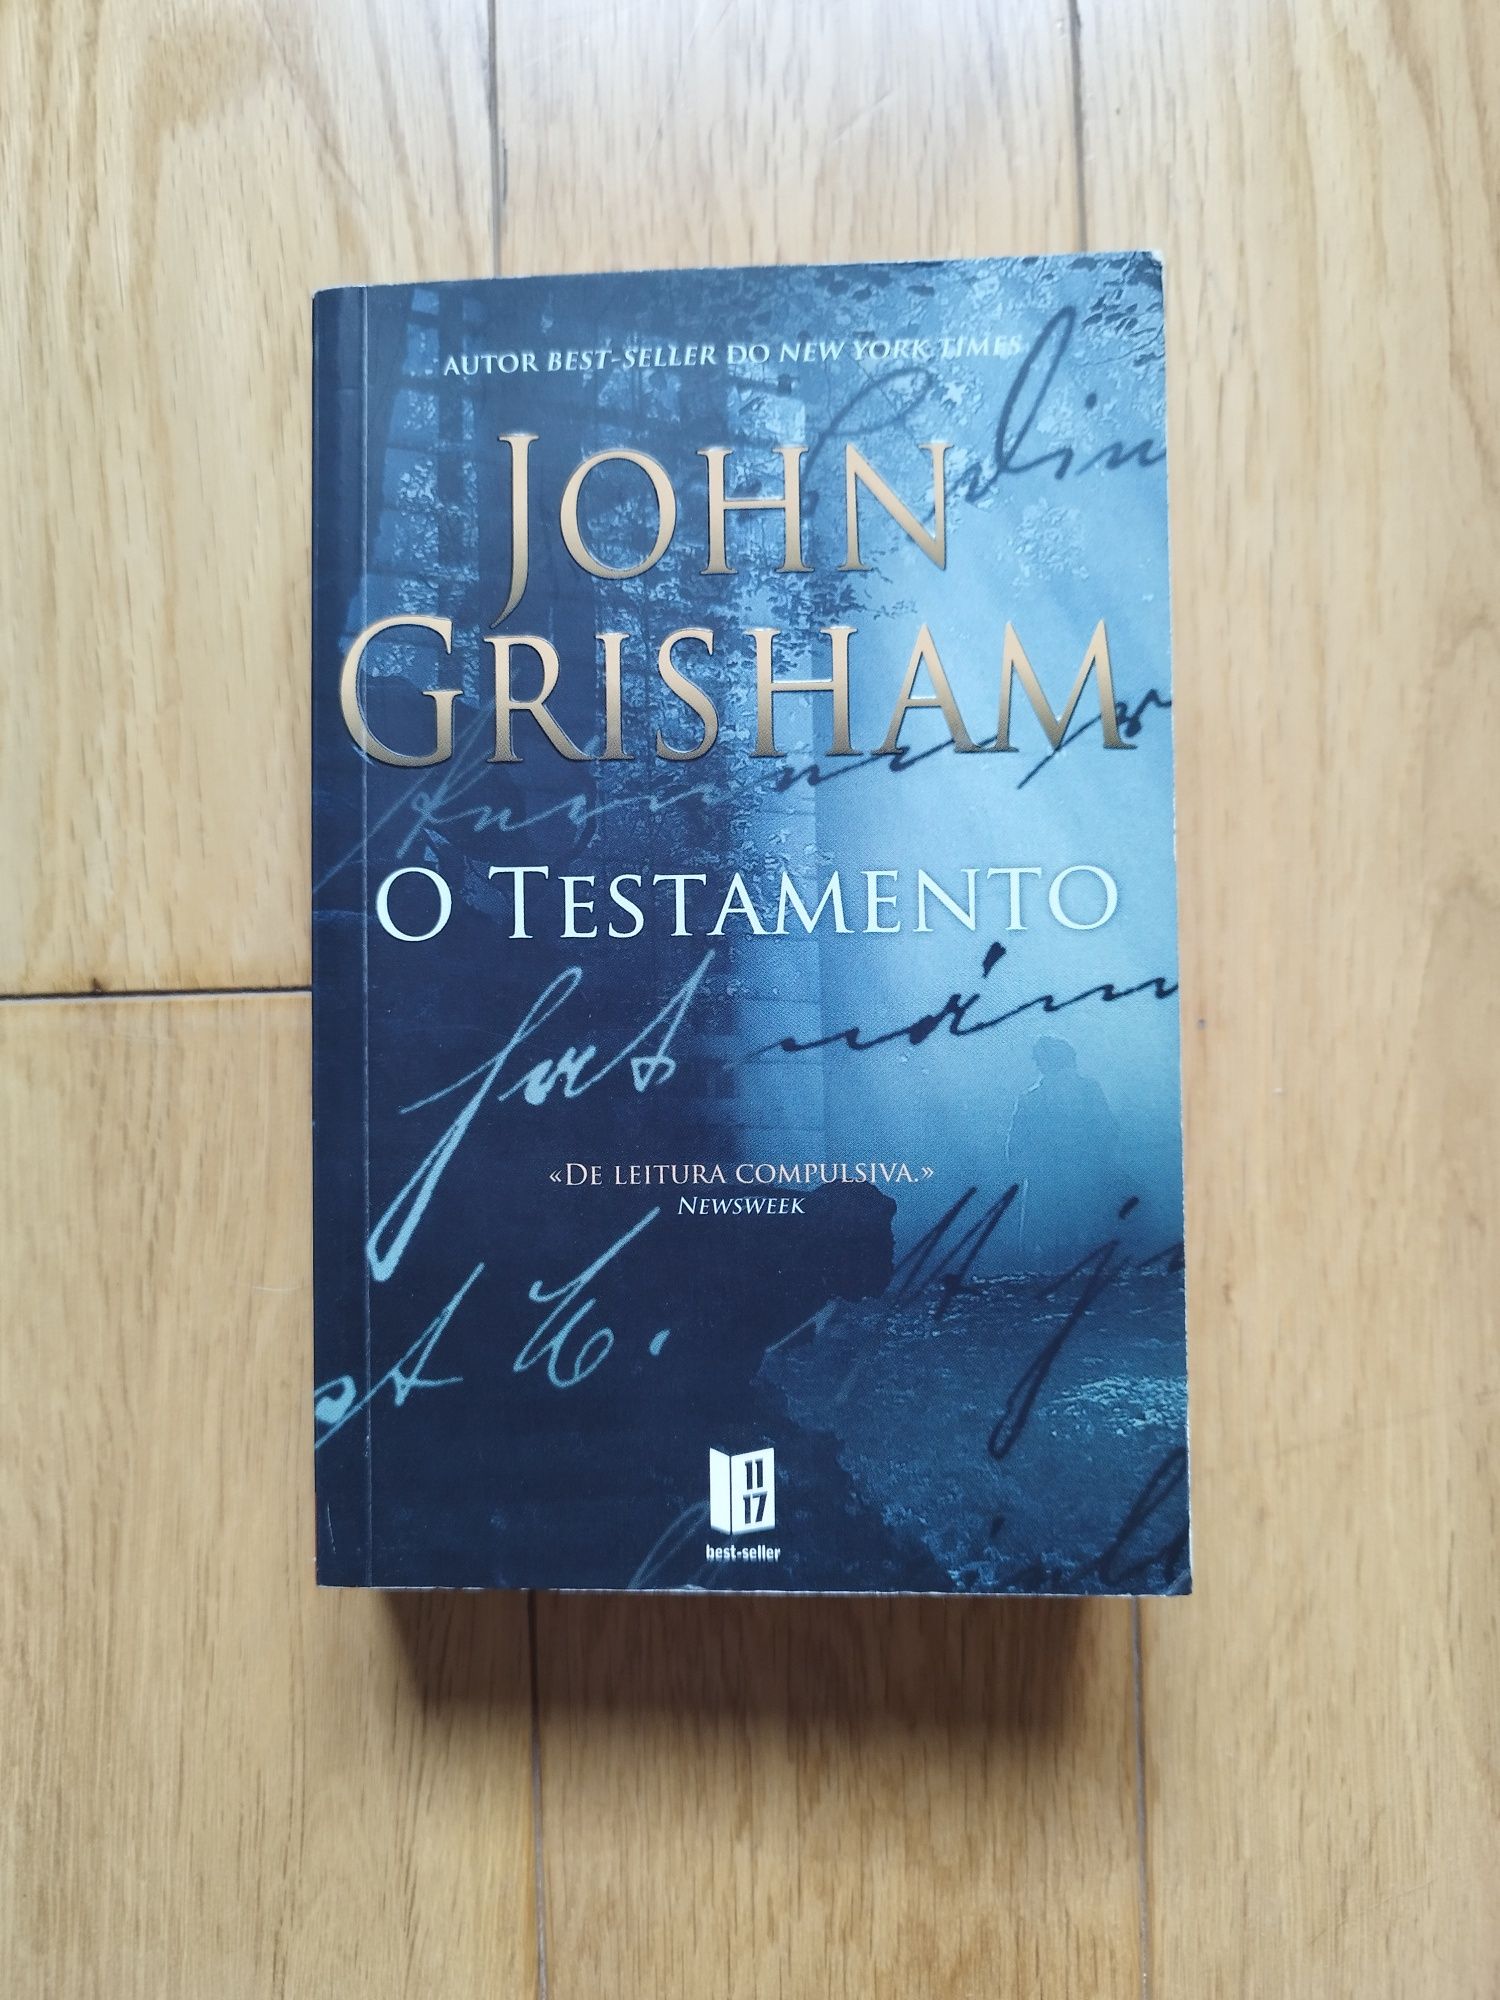 O testamento de John Grisham